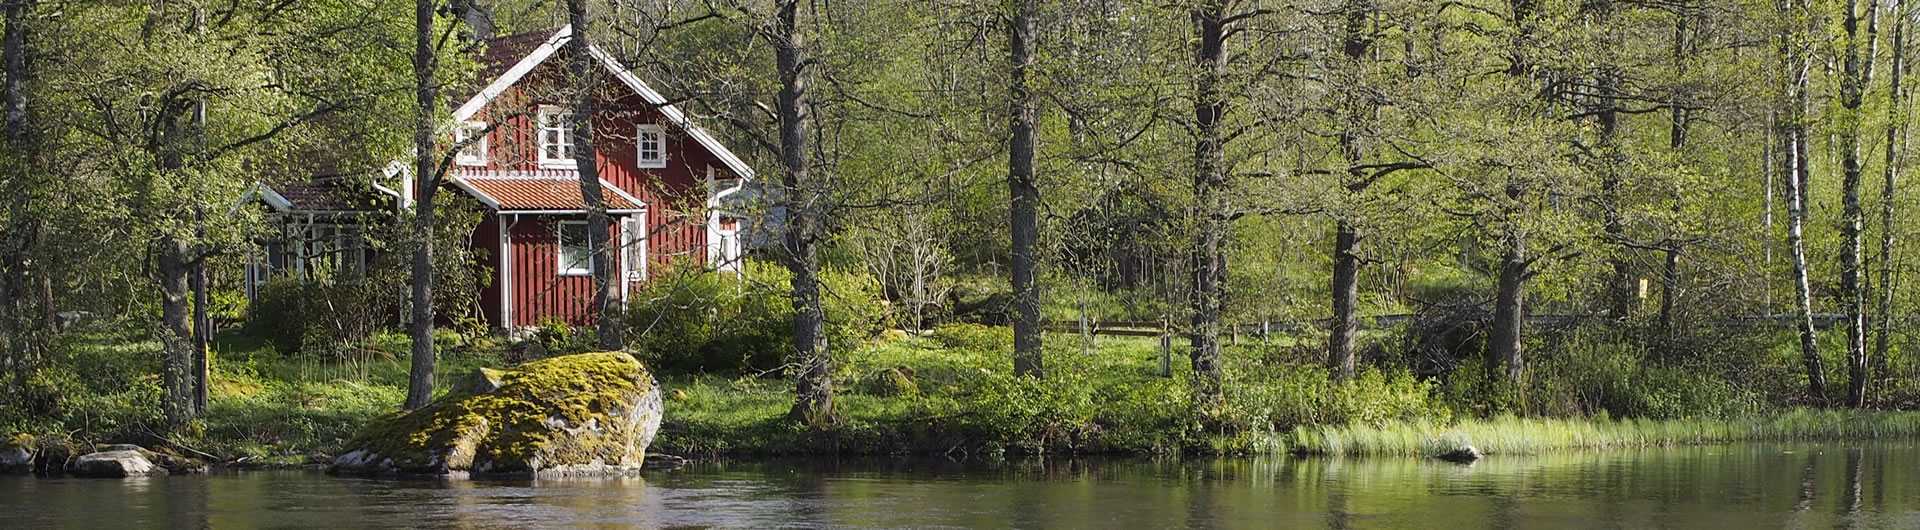 Schweden - Smaland: Ferienhaus am See